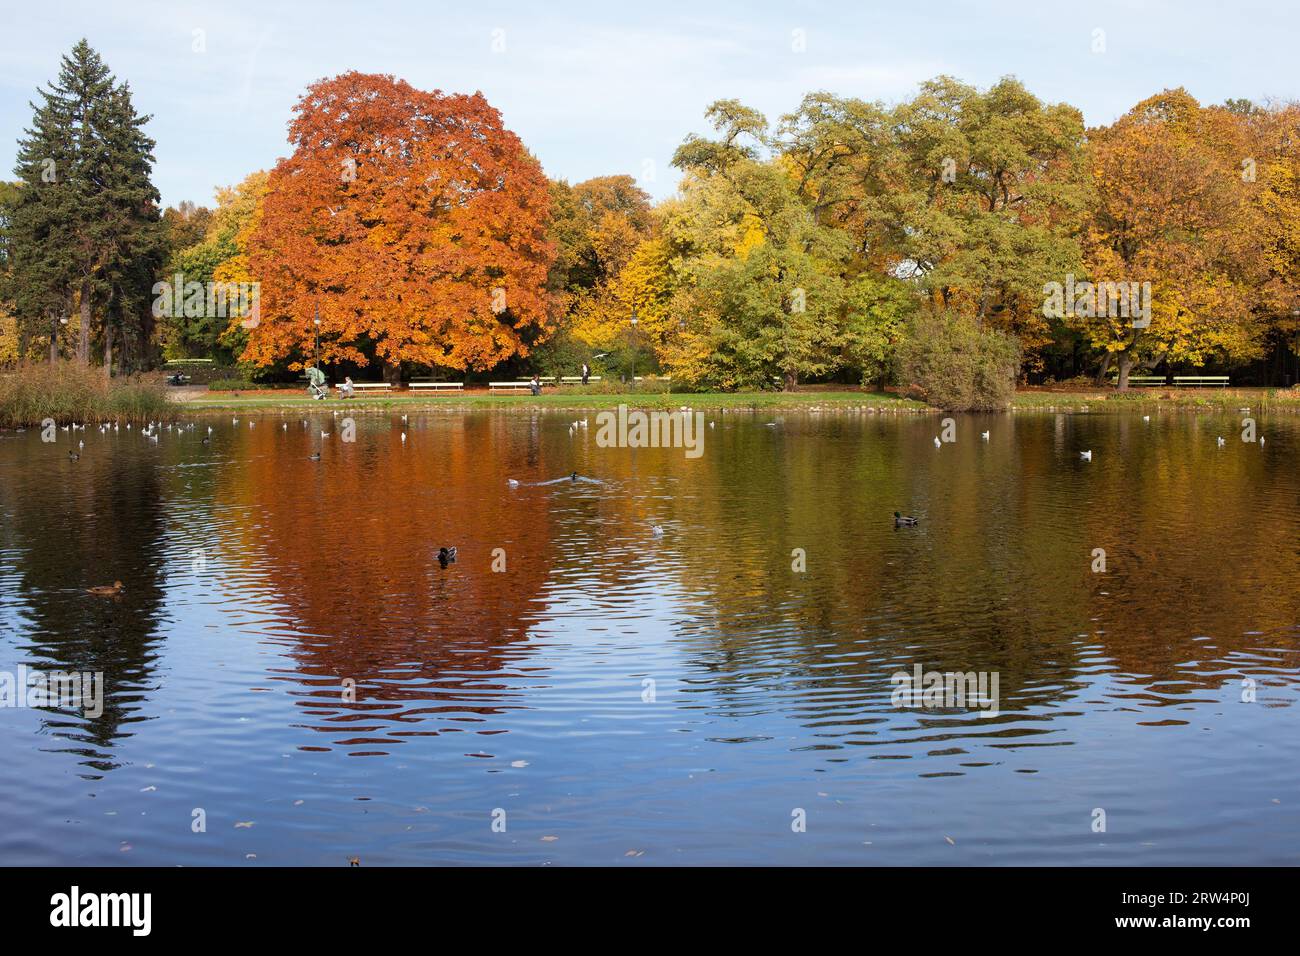 Lac et arbres d'automne avec reflets sur l'eau dans le parc Ujazdowski, centre-ville de Varsovie, Pologne Banque D'Images